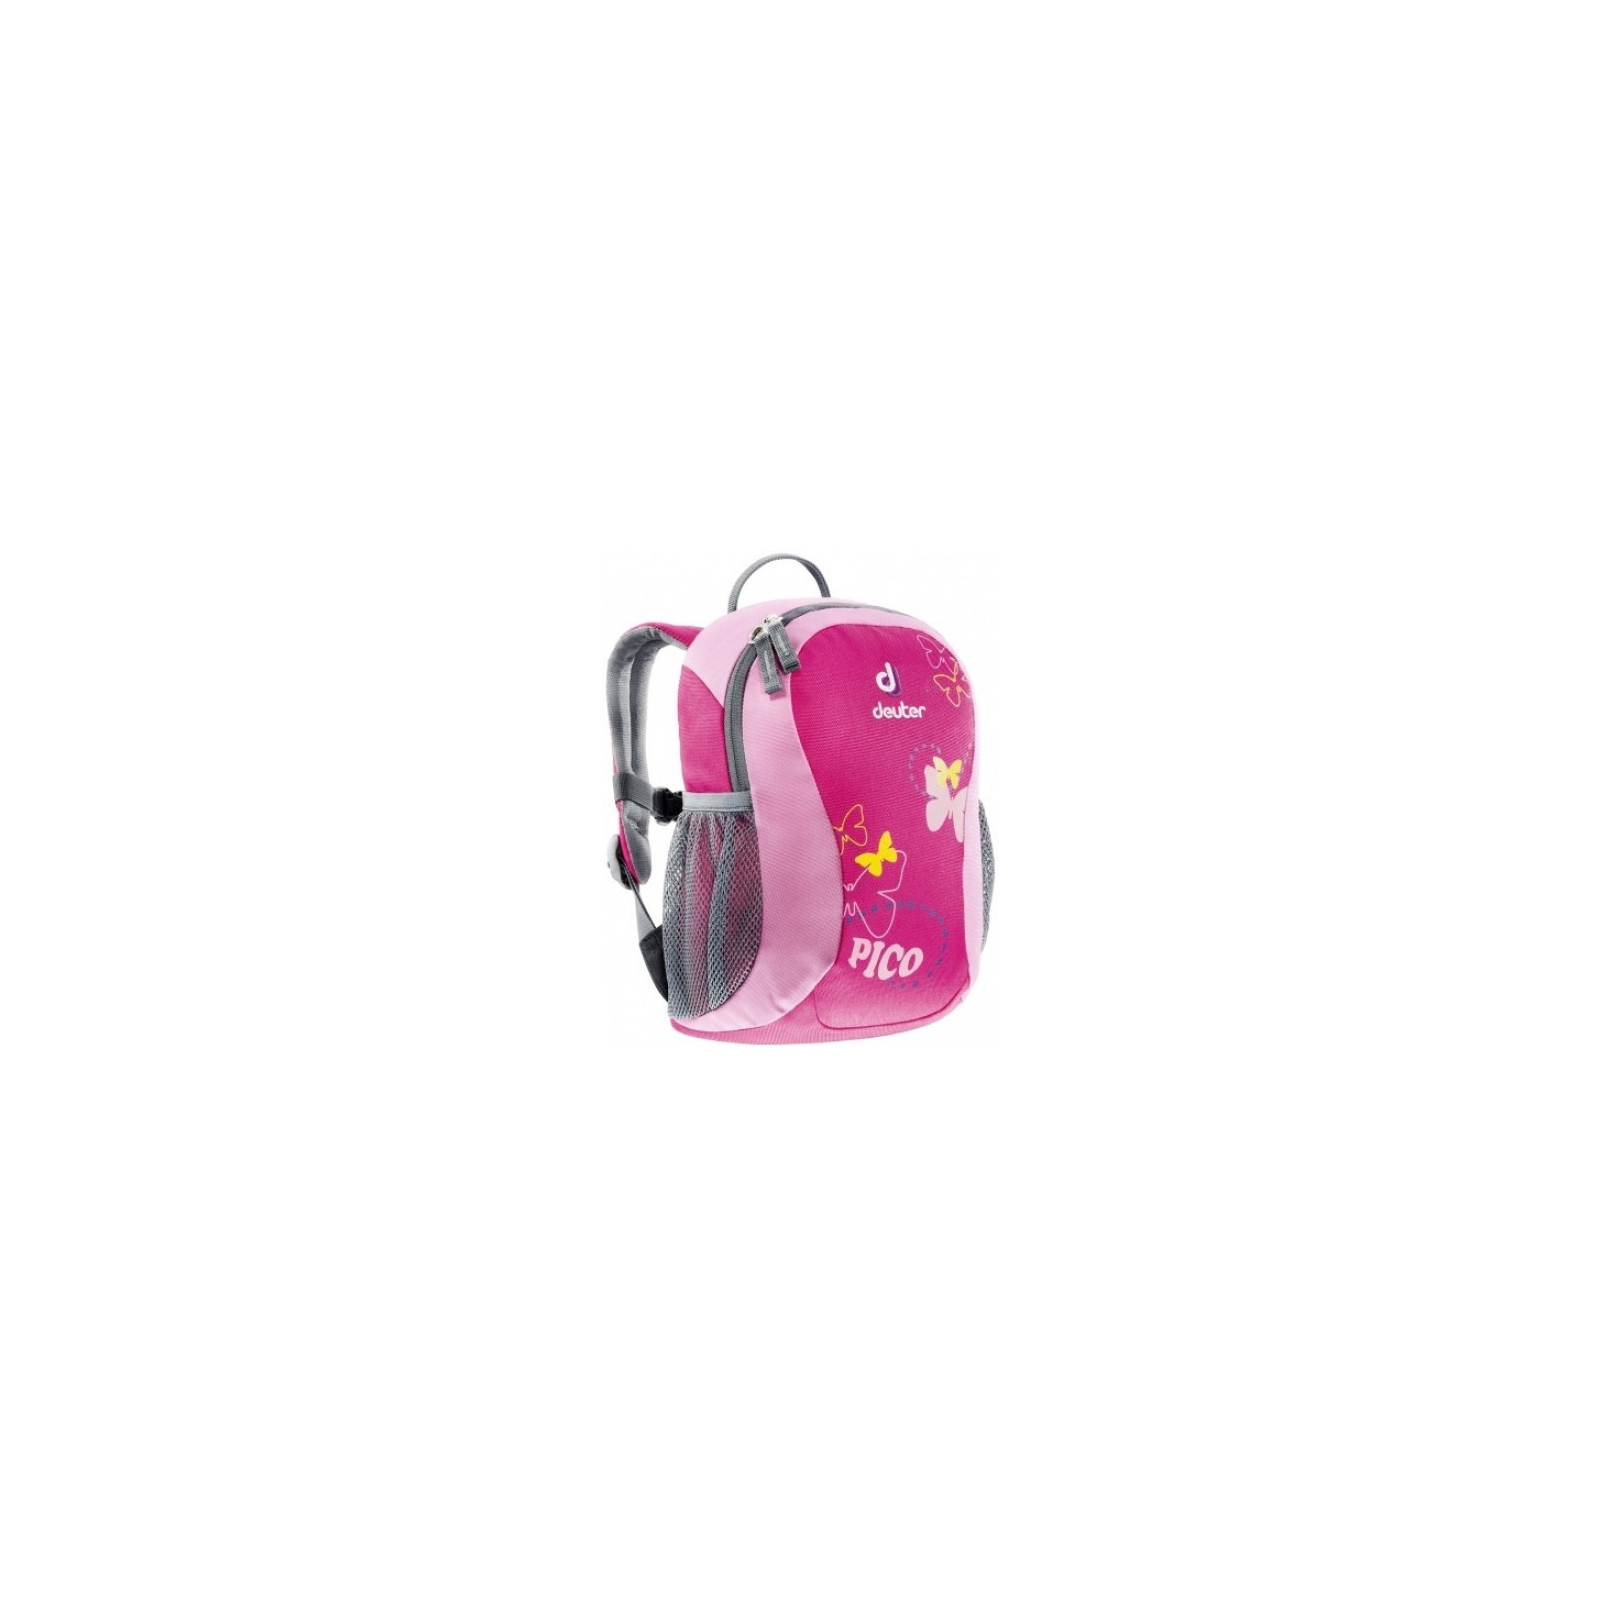 Рюкзак туристичний Deuter Pico pink (36043 5040)